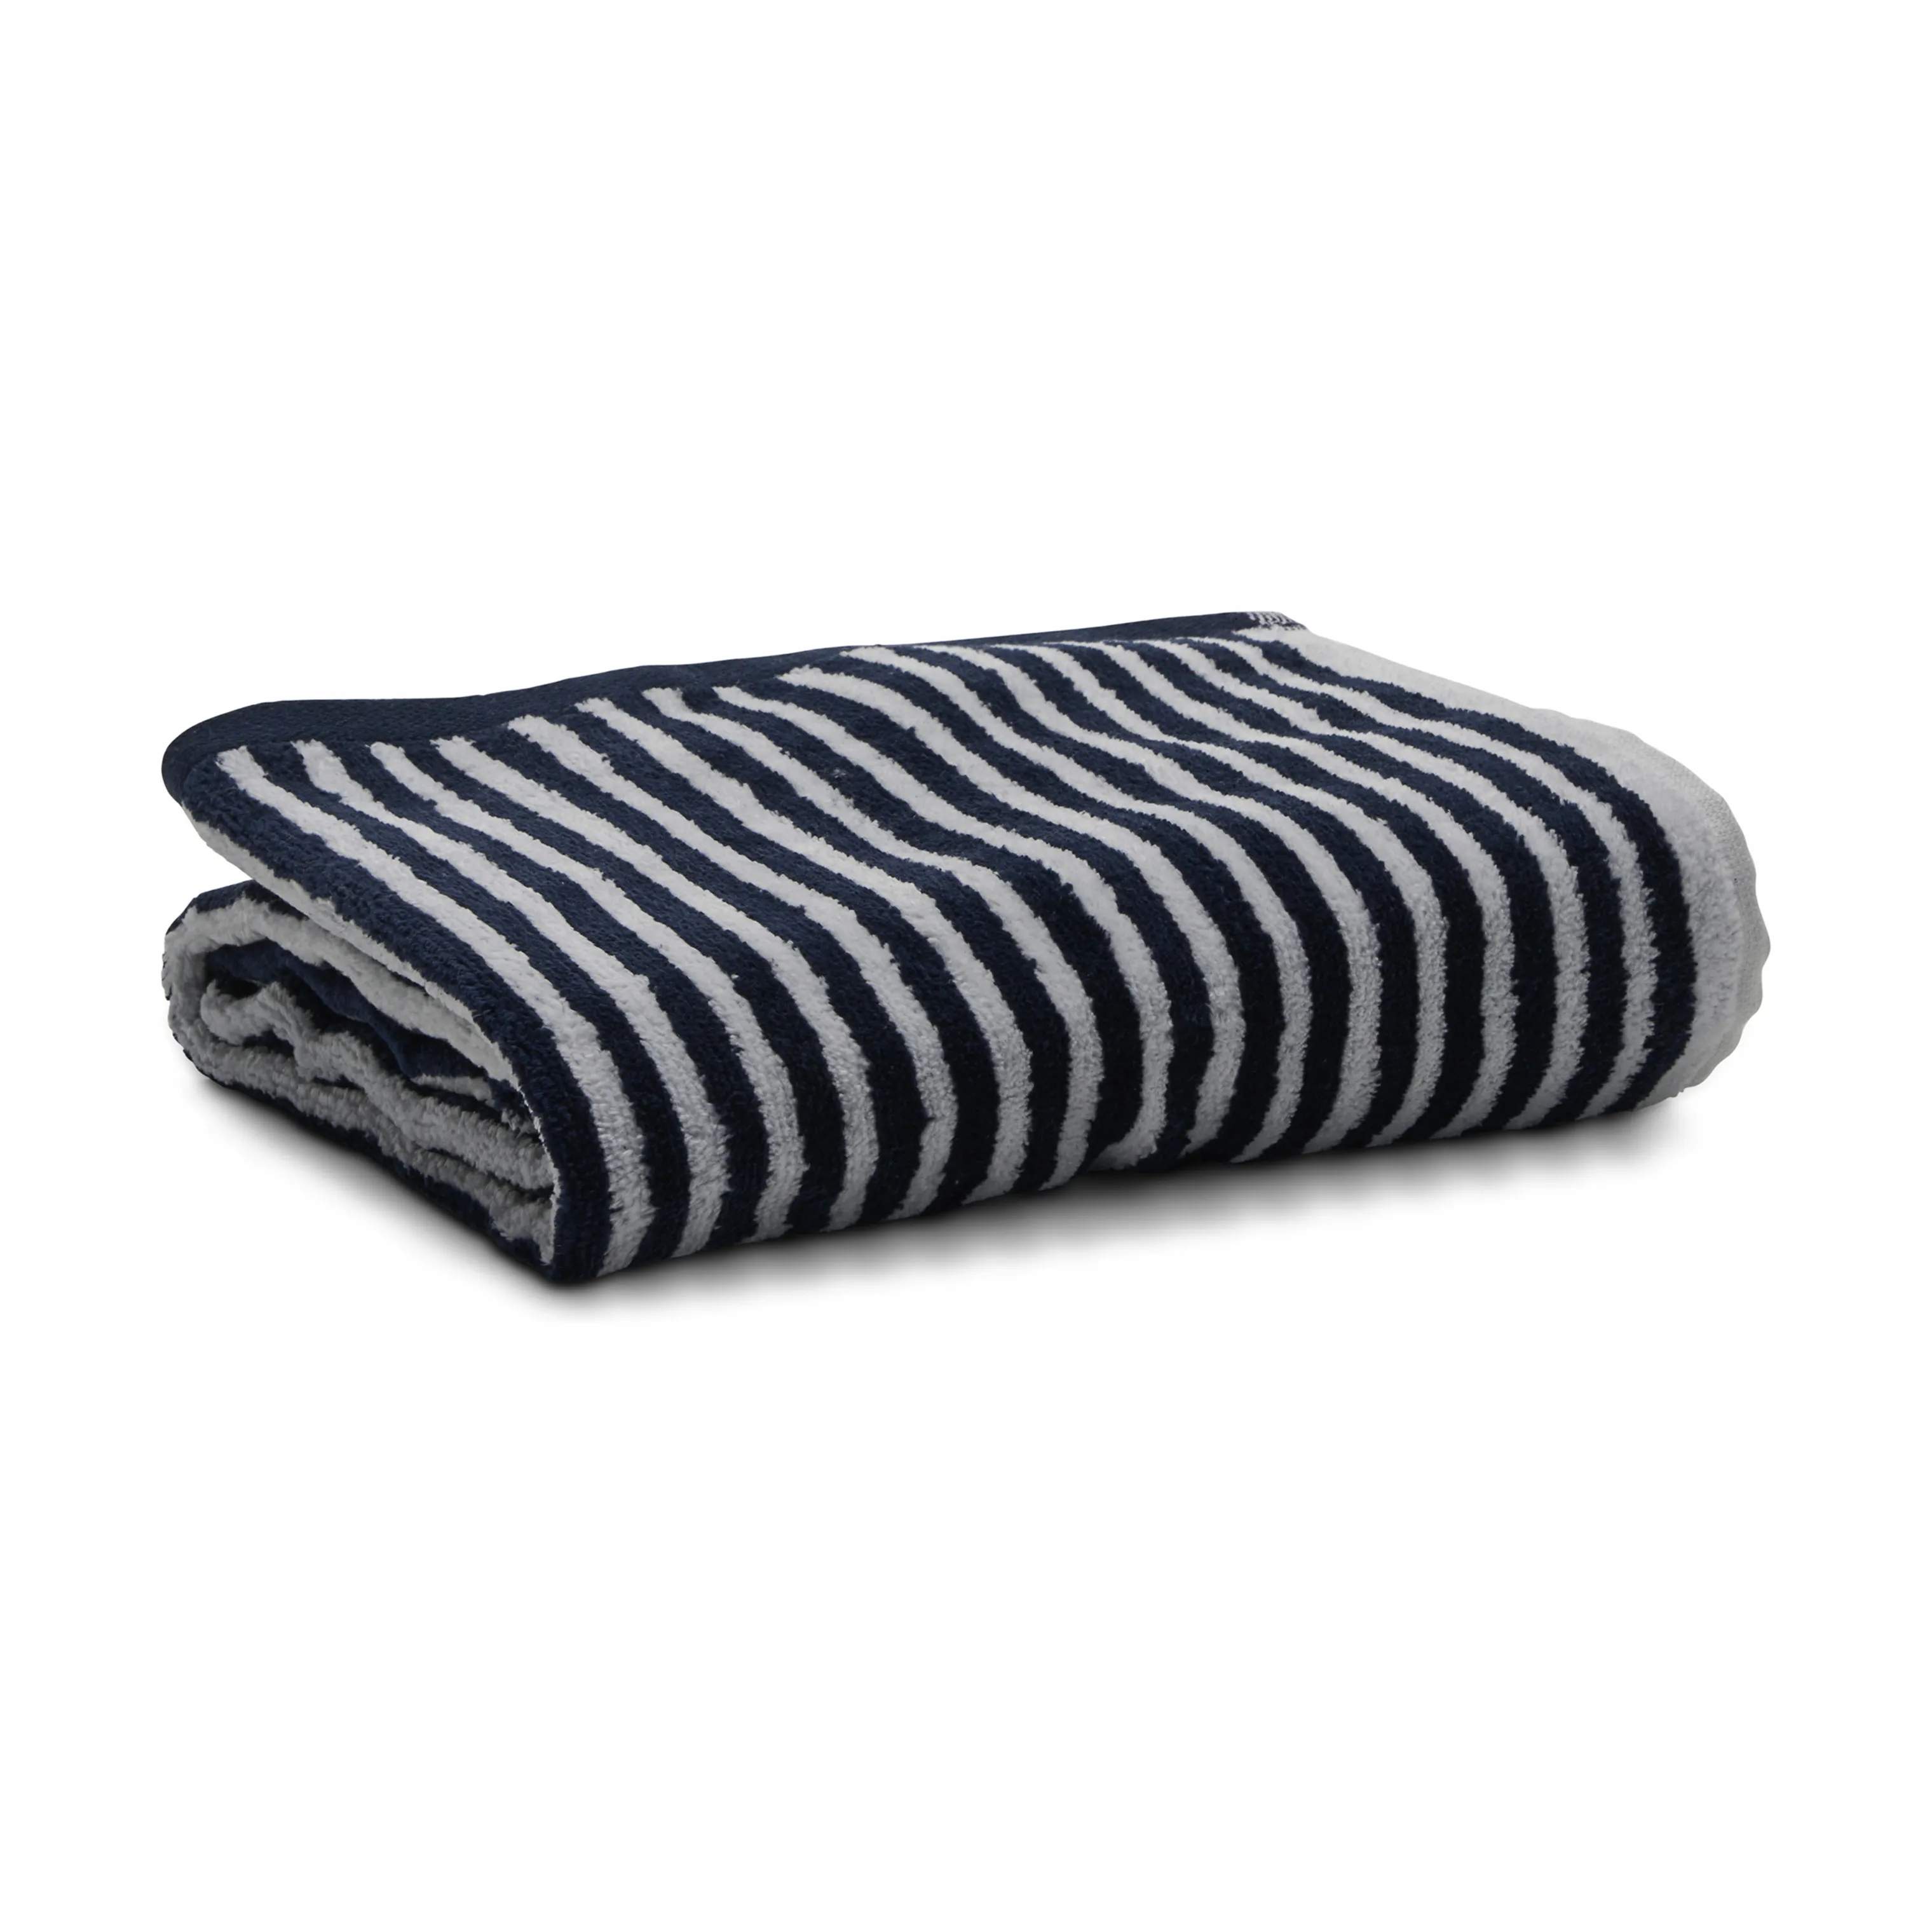 Håndklæde, navy/hvid, large